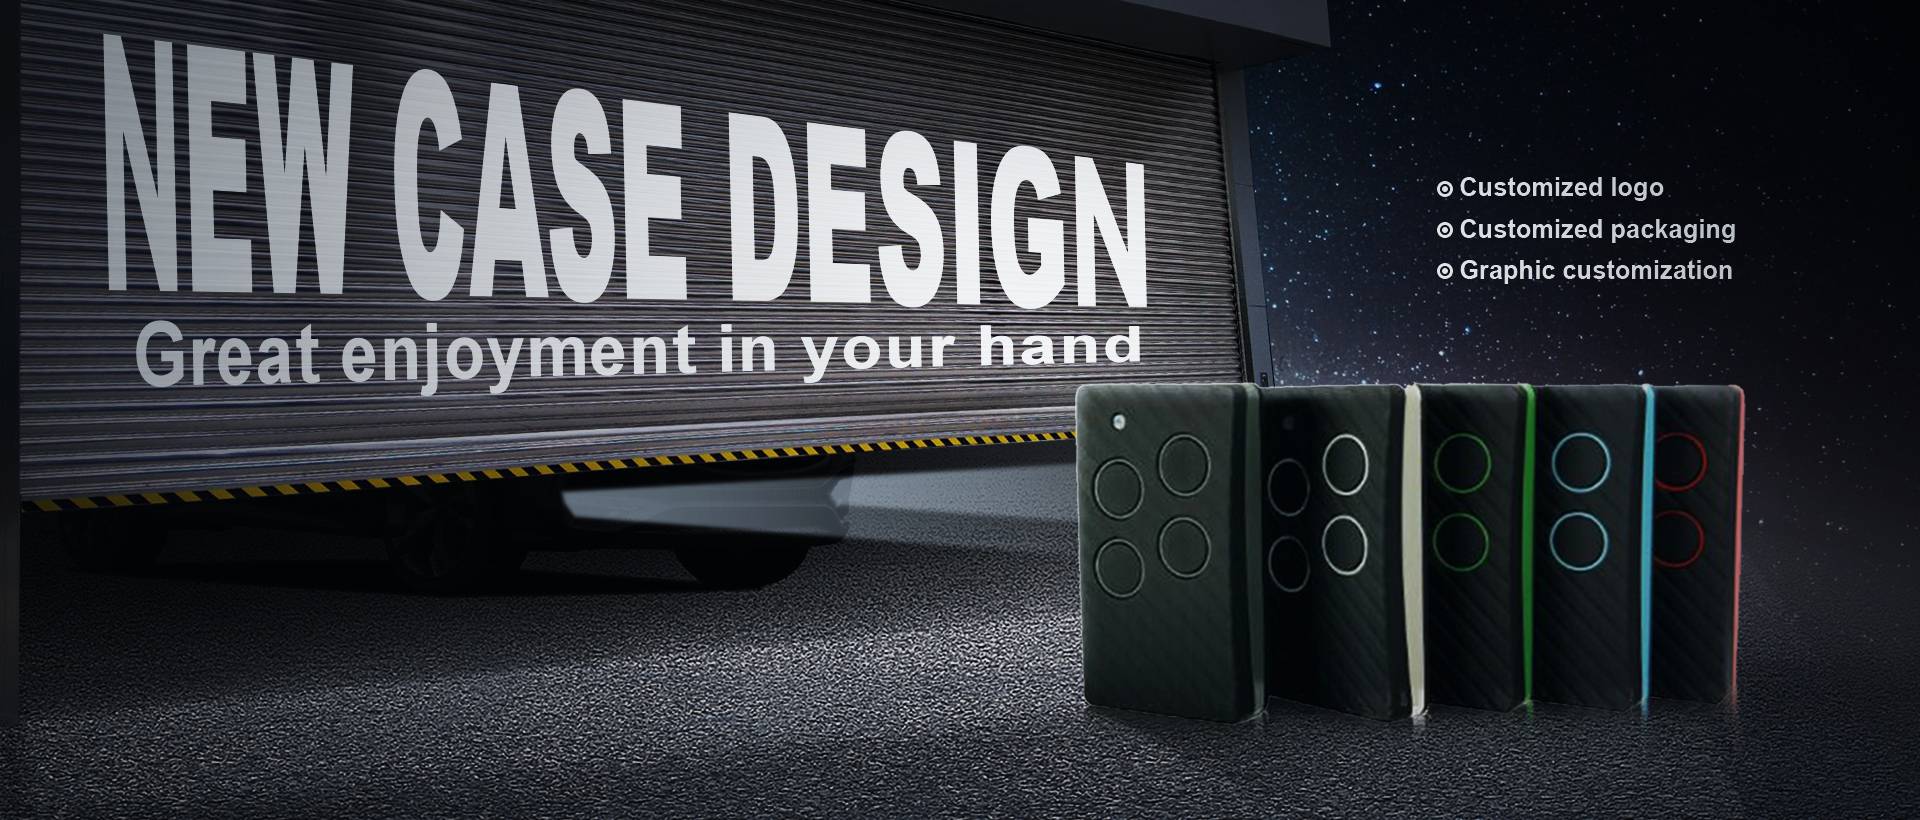 new case design remote control